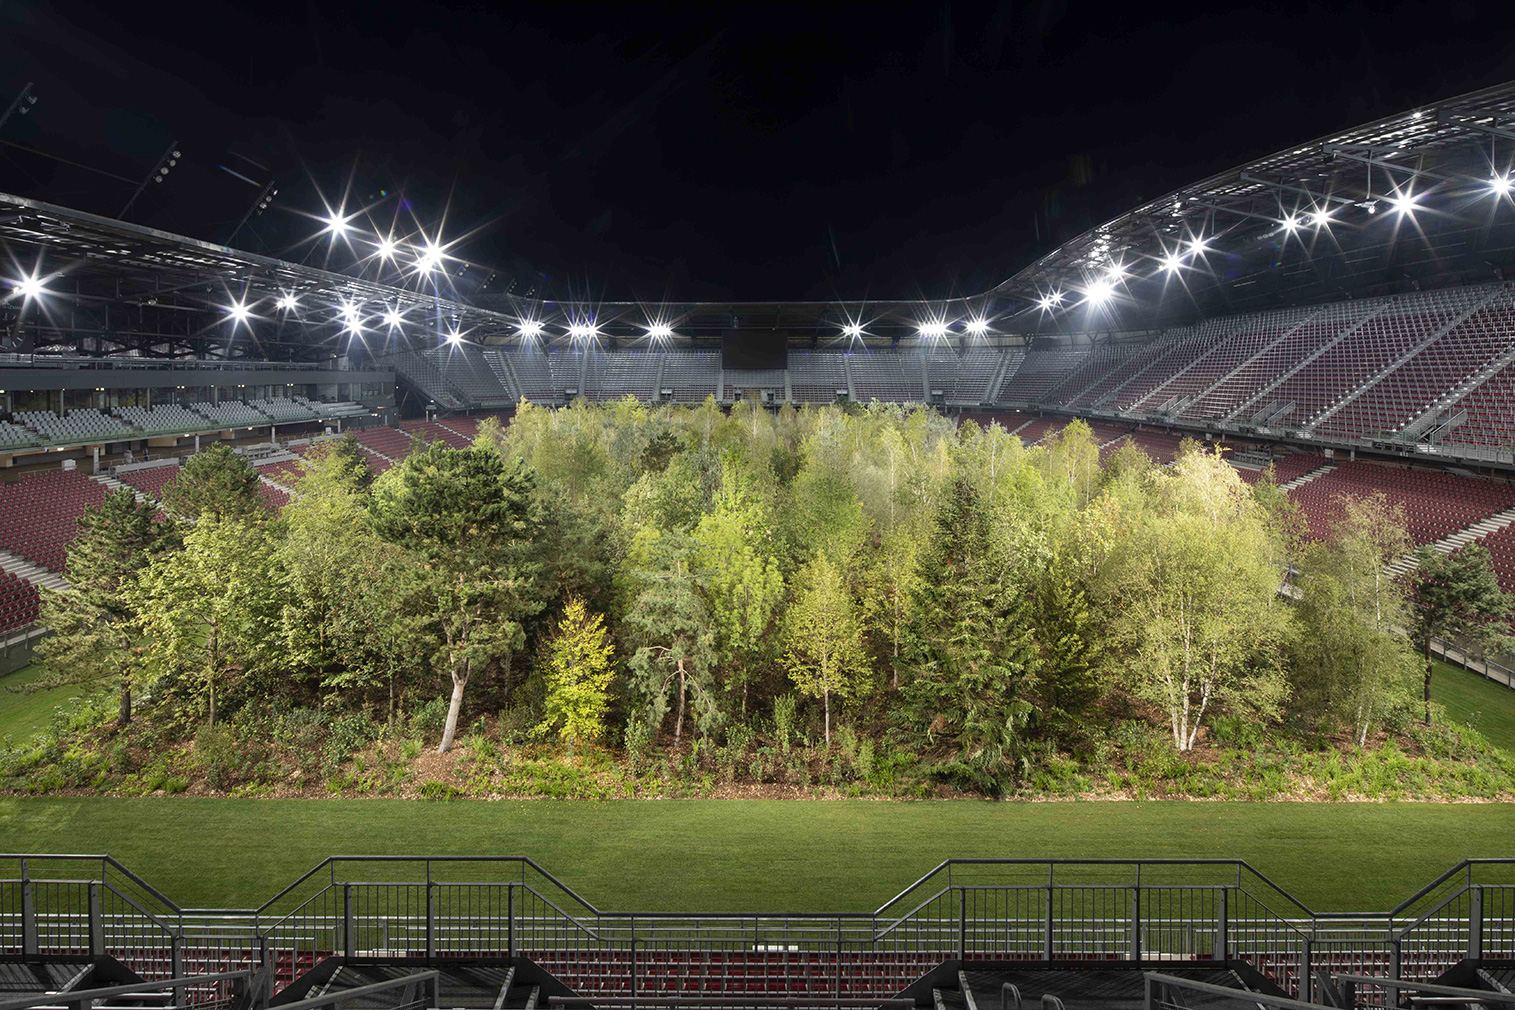 Artist Klaus Littmann fills an Austrian football stadium with 300 trees